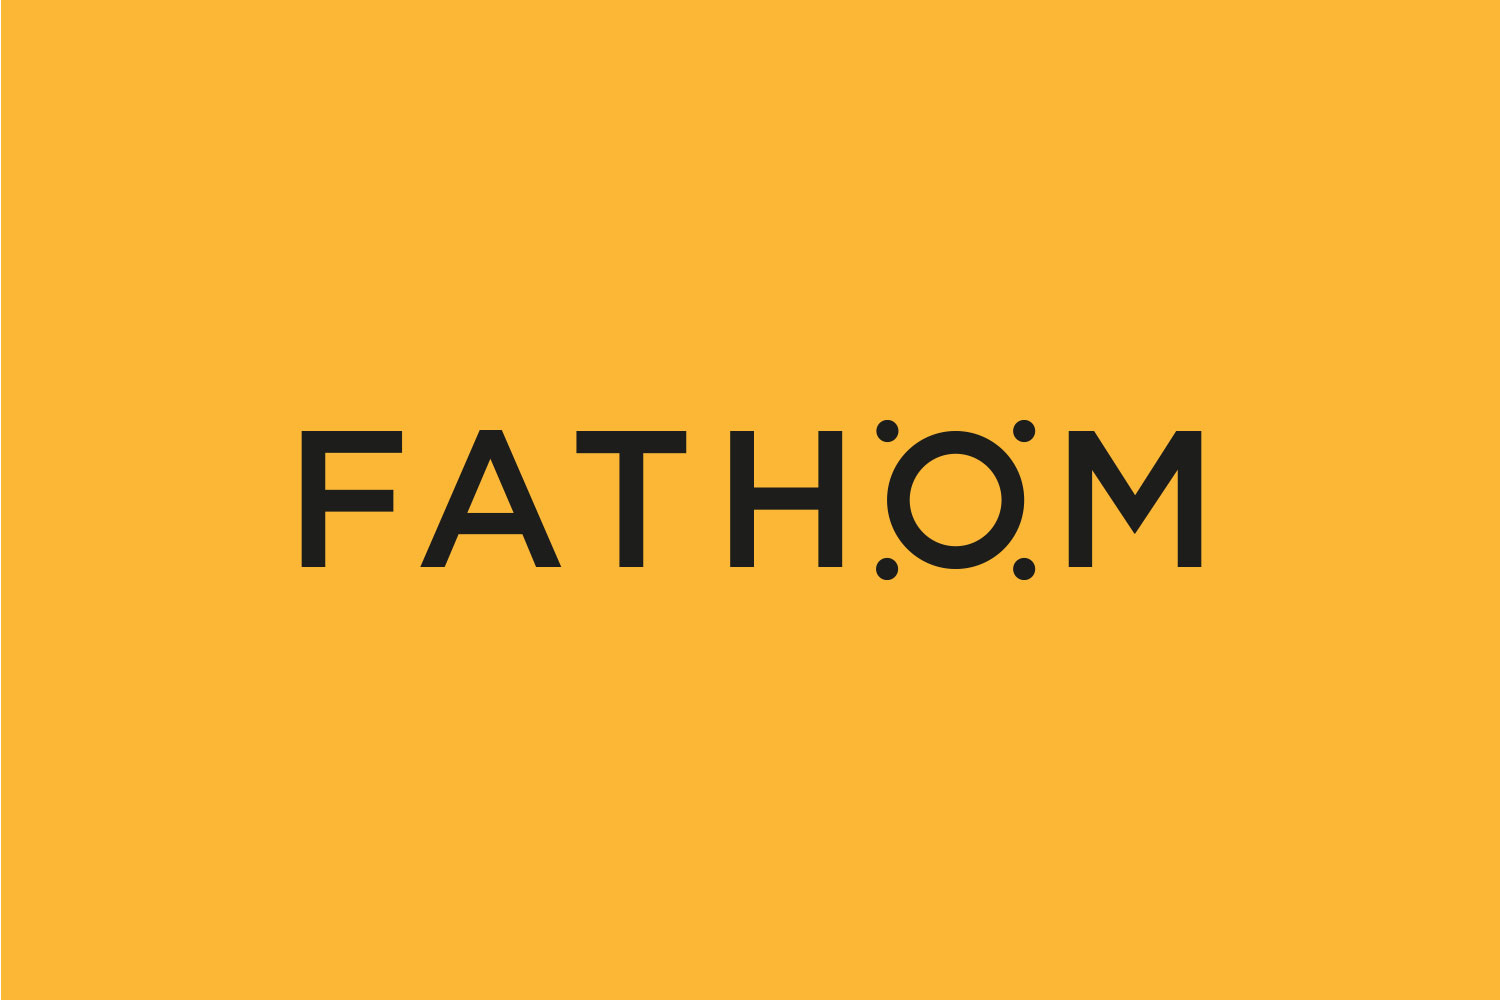 Fathom Brand Identity – a Nostalgic Approach for a Forward Thinking Company